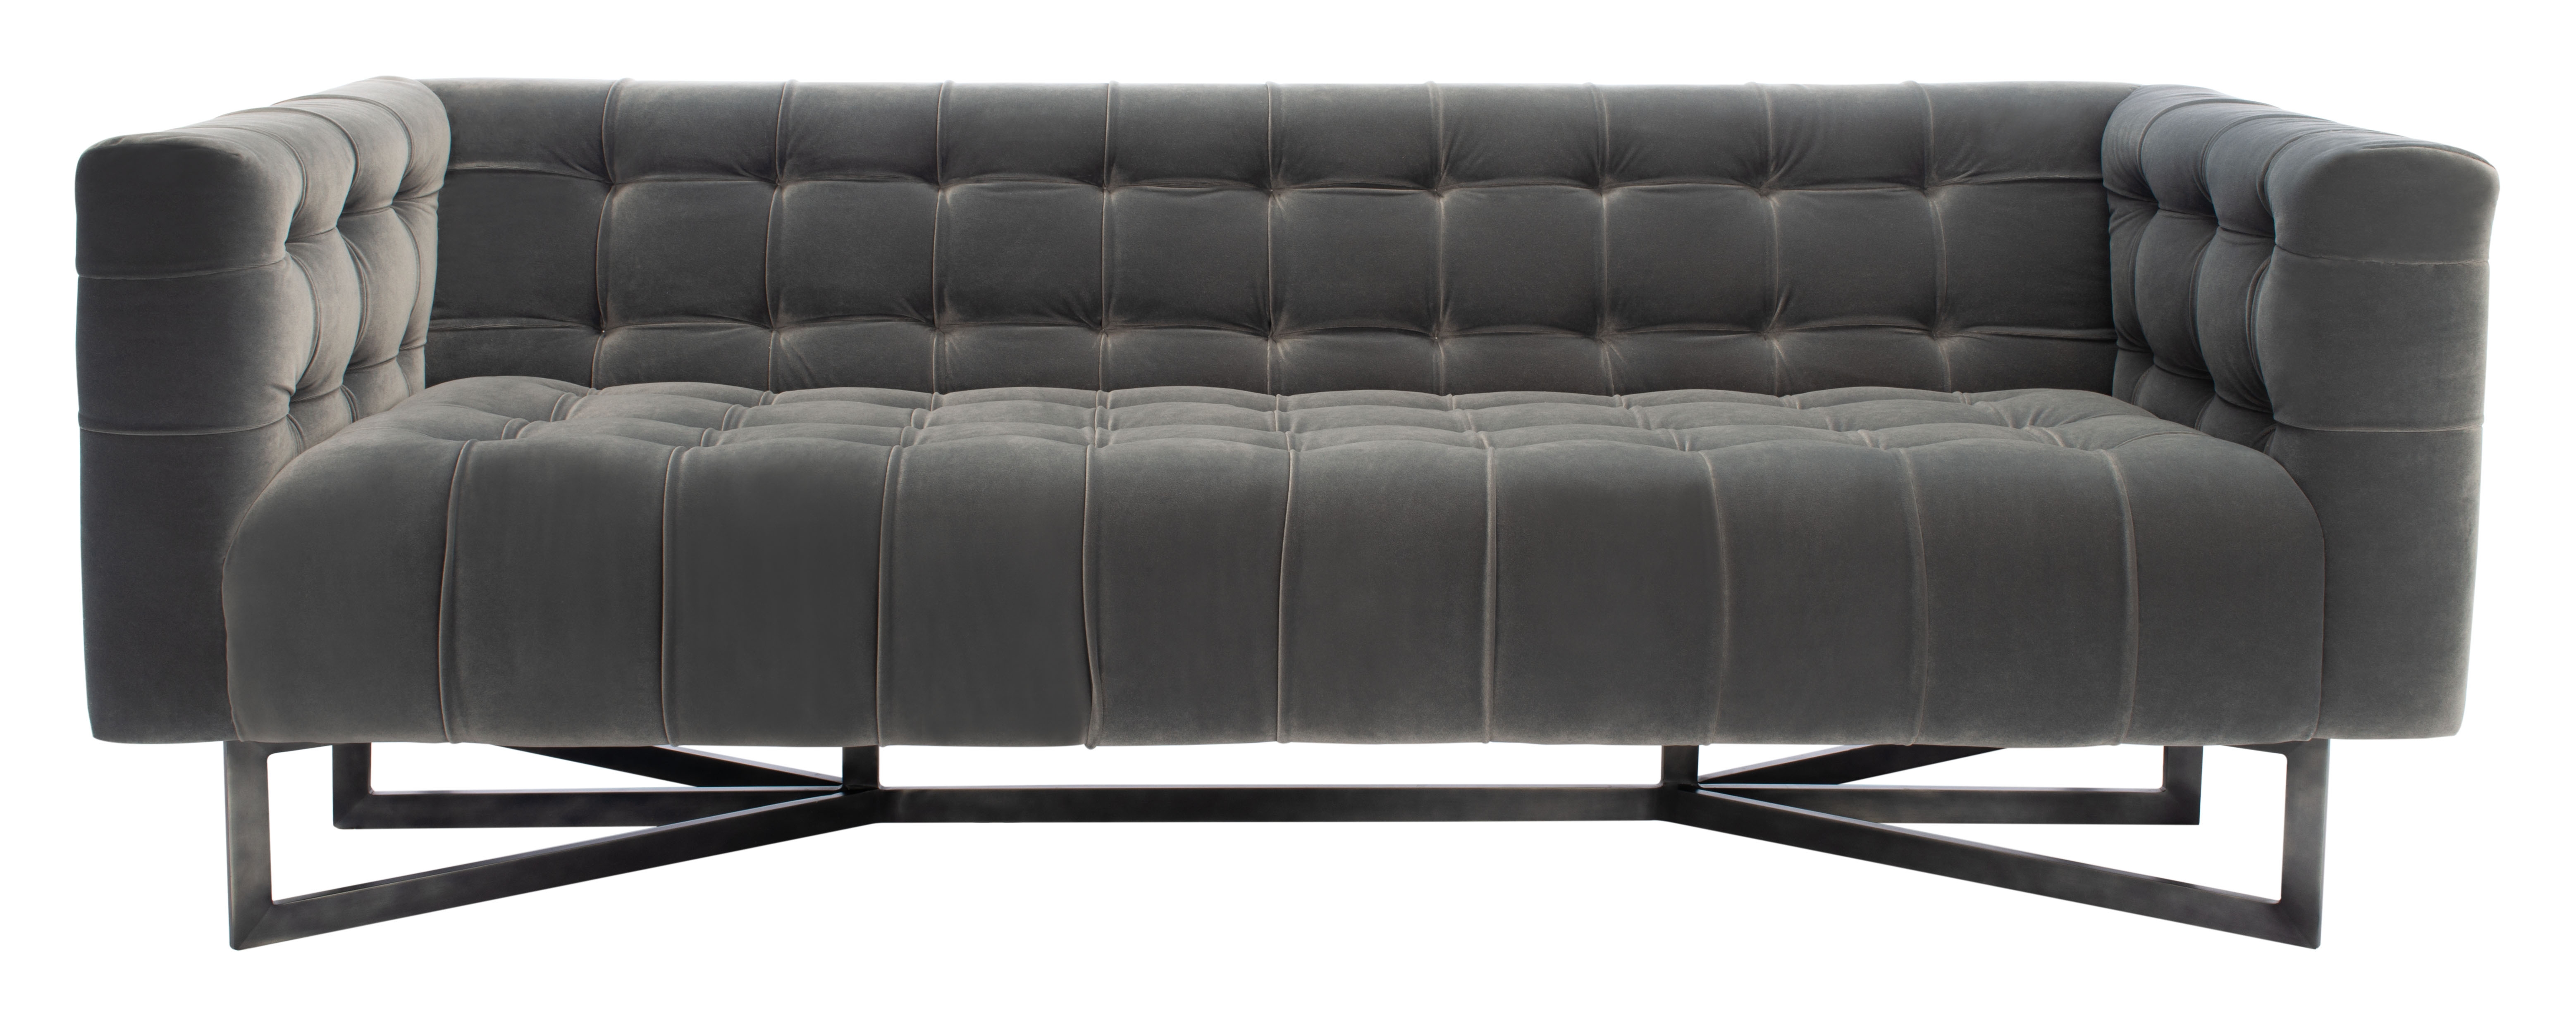 Myra Modern Tufted Sofa - Charcoal - Arlo Home - Image 0